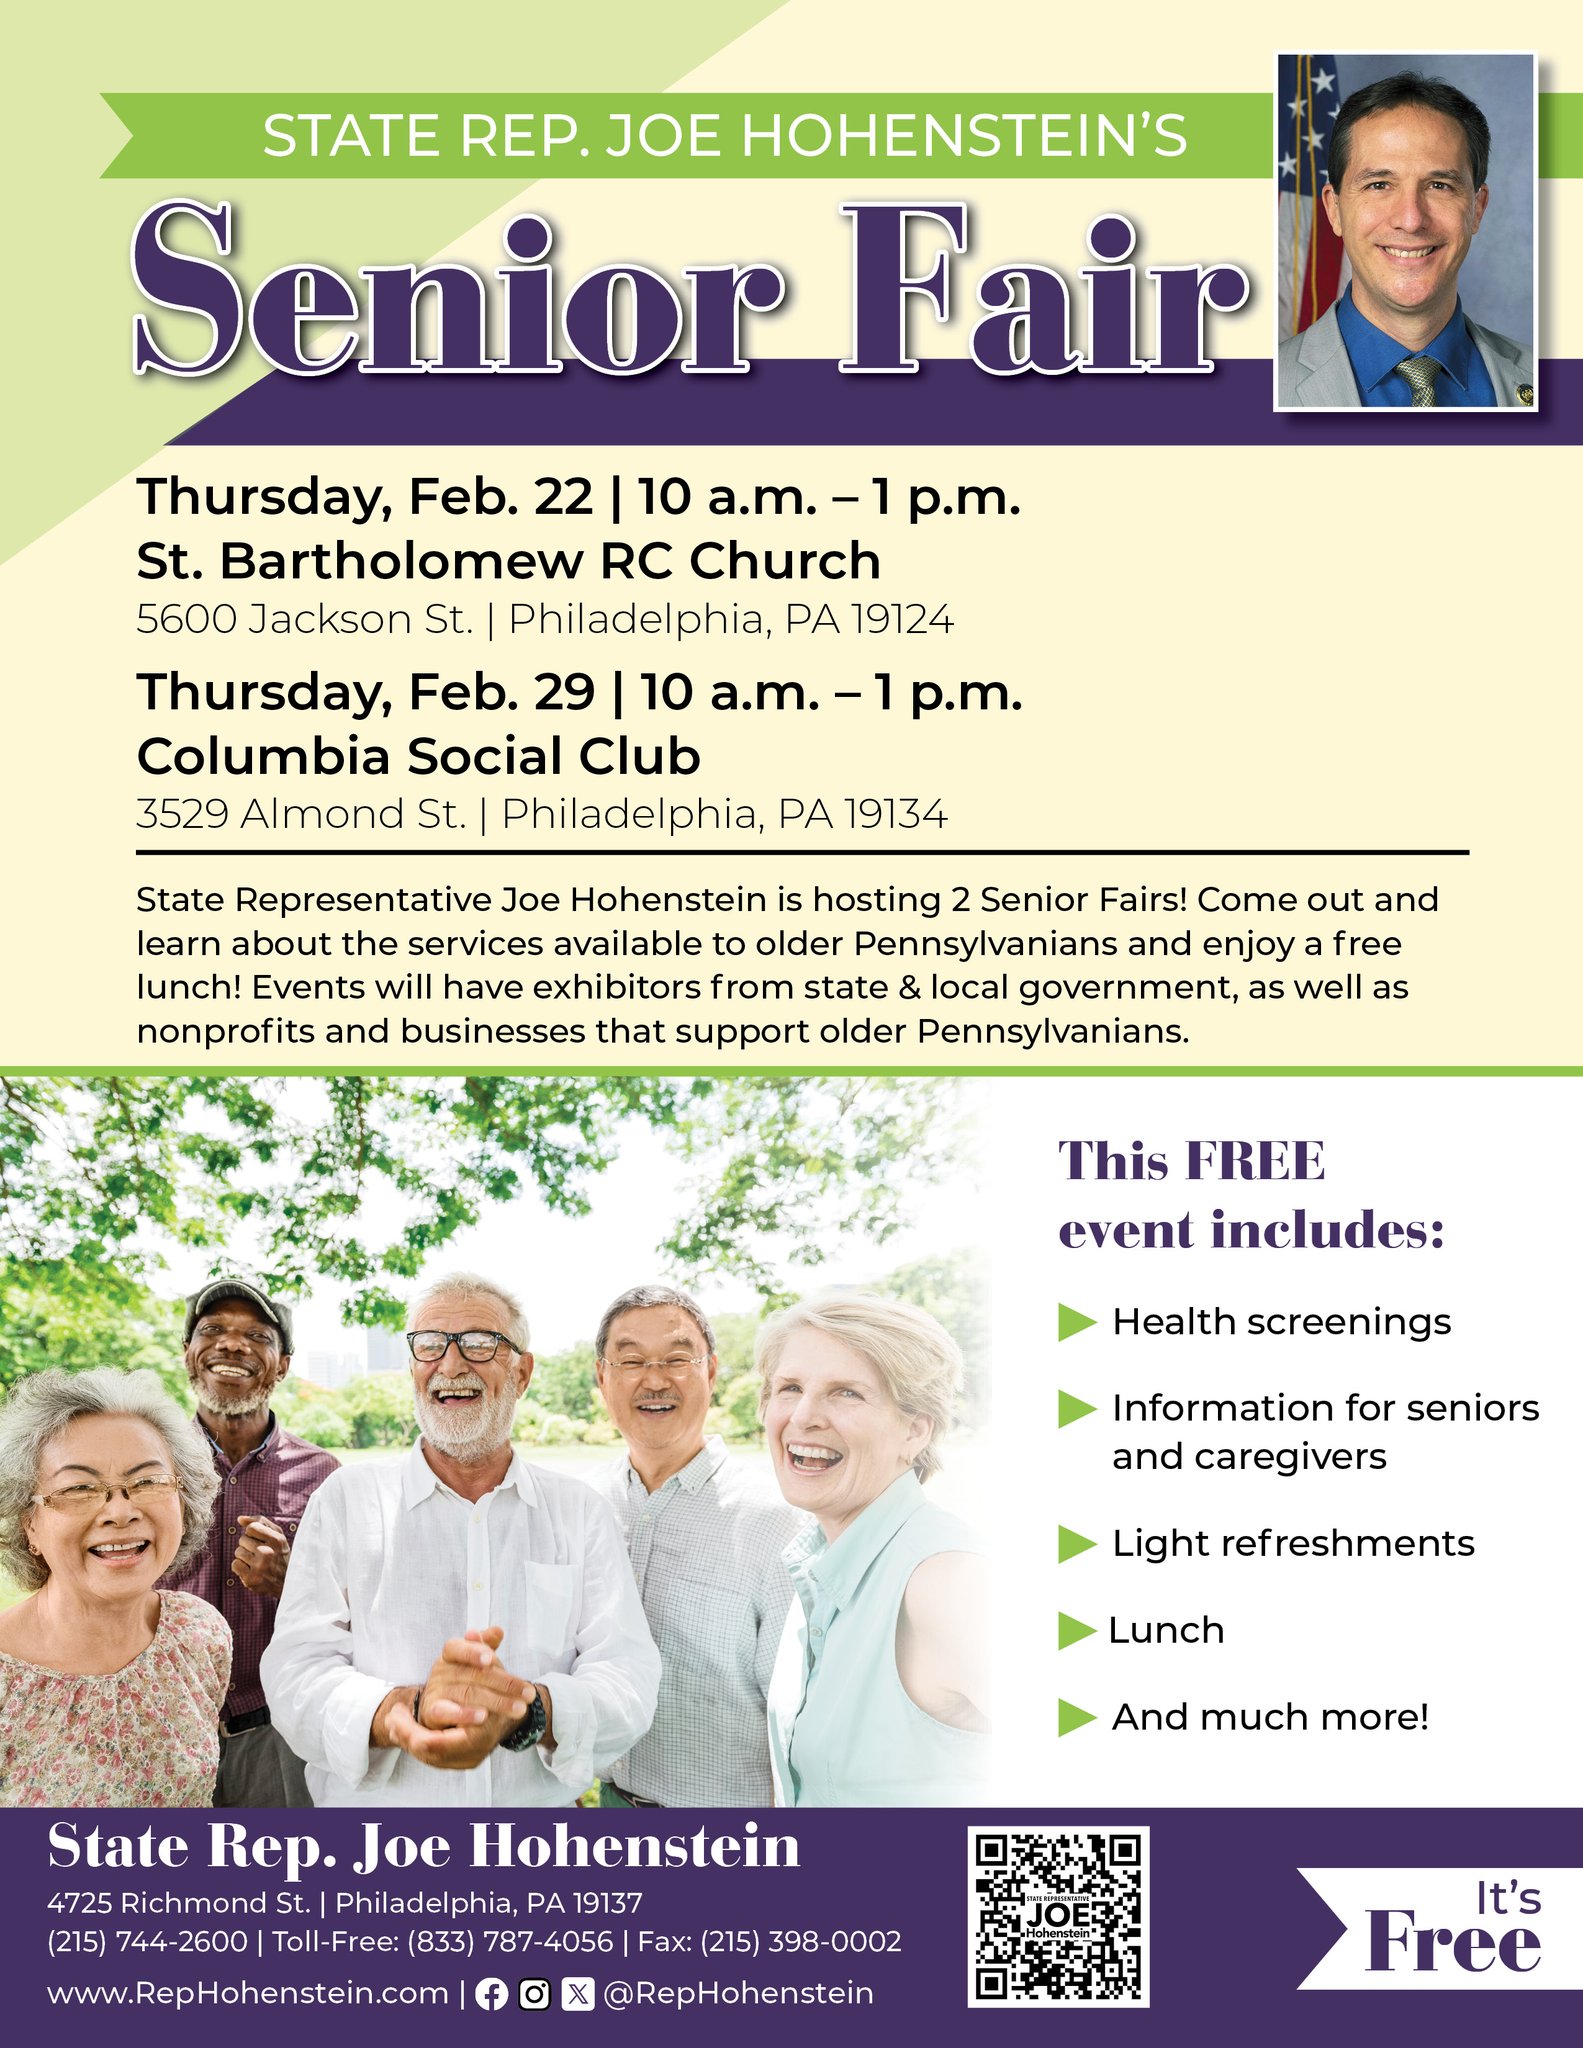 Information for seniors